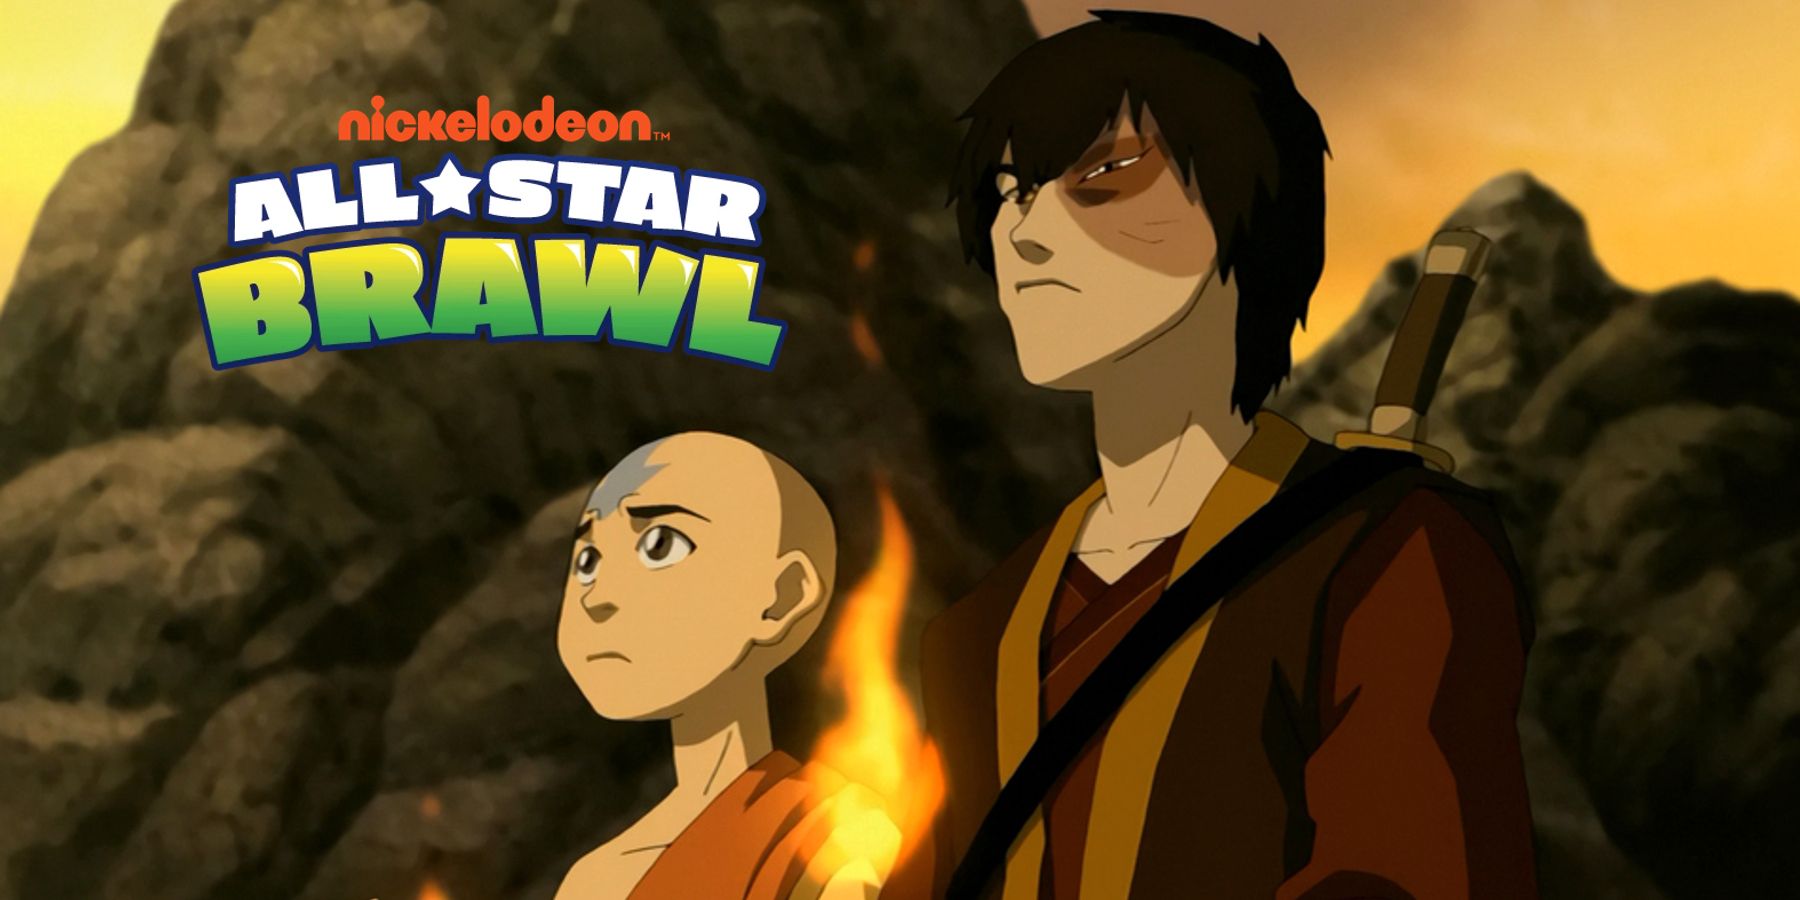 Nickelodeon All-Star Brawl: Zuko herceg tökéletesen befejezné az Avatar szereplőit